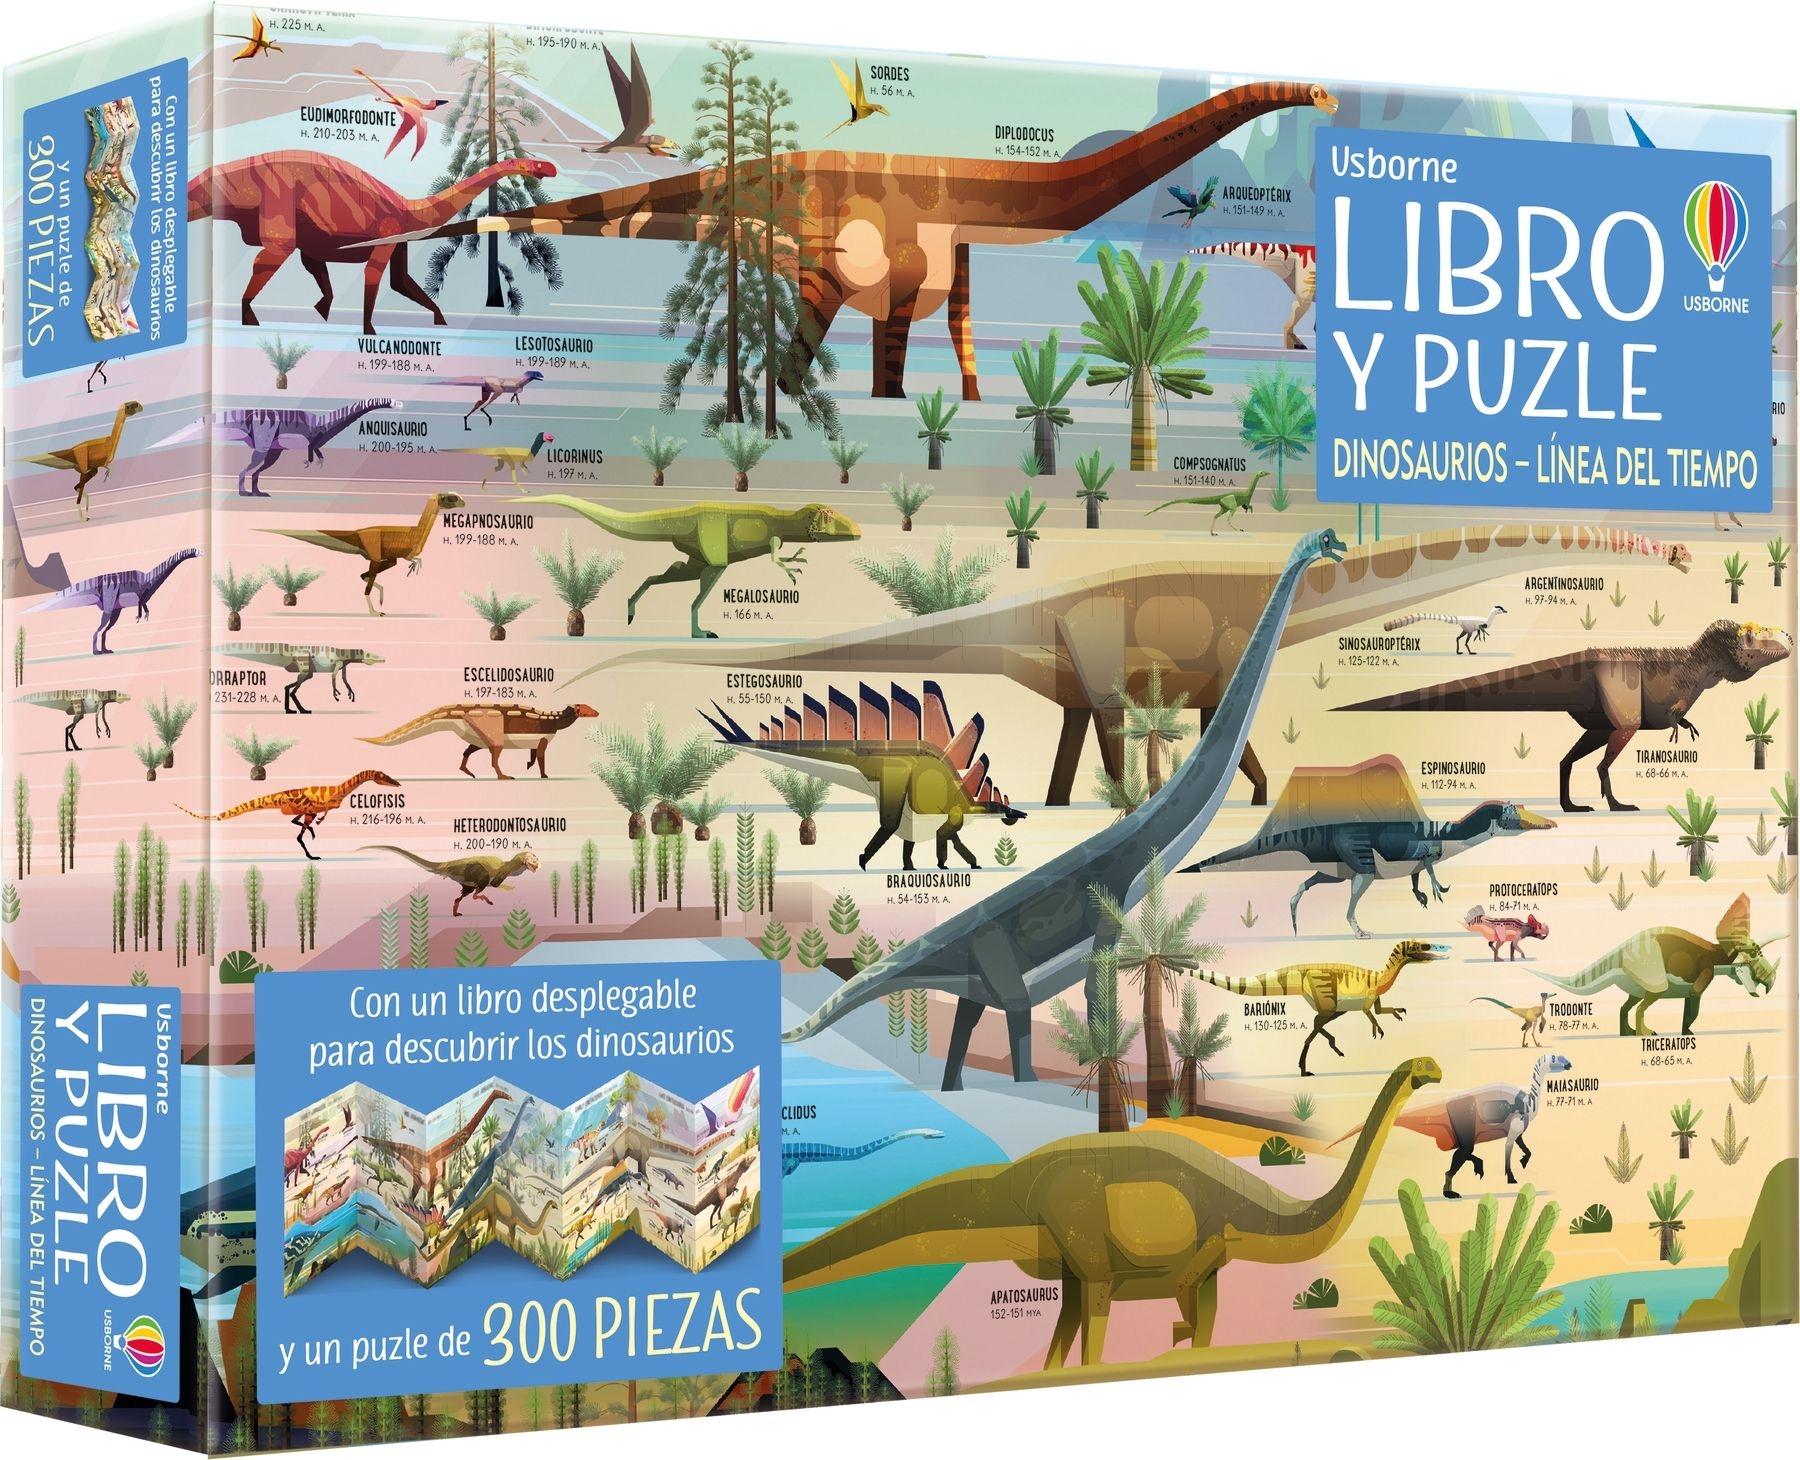 Dinosaurios Linea del Tiempo "Libro+Puzle"